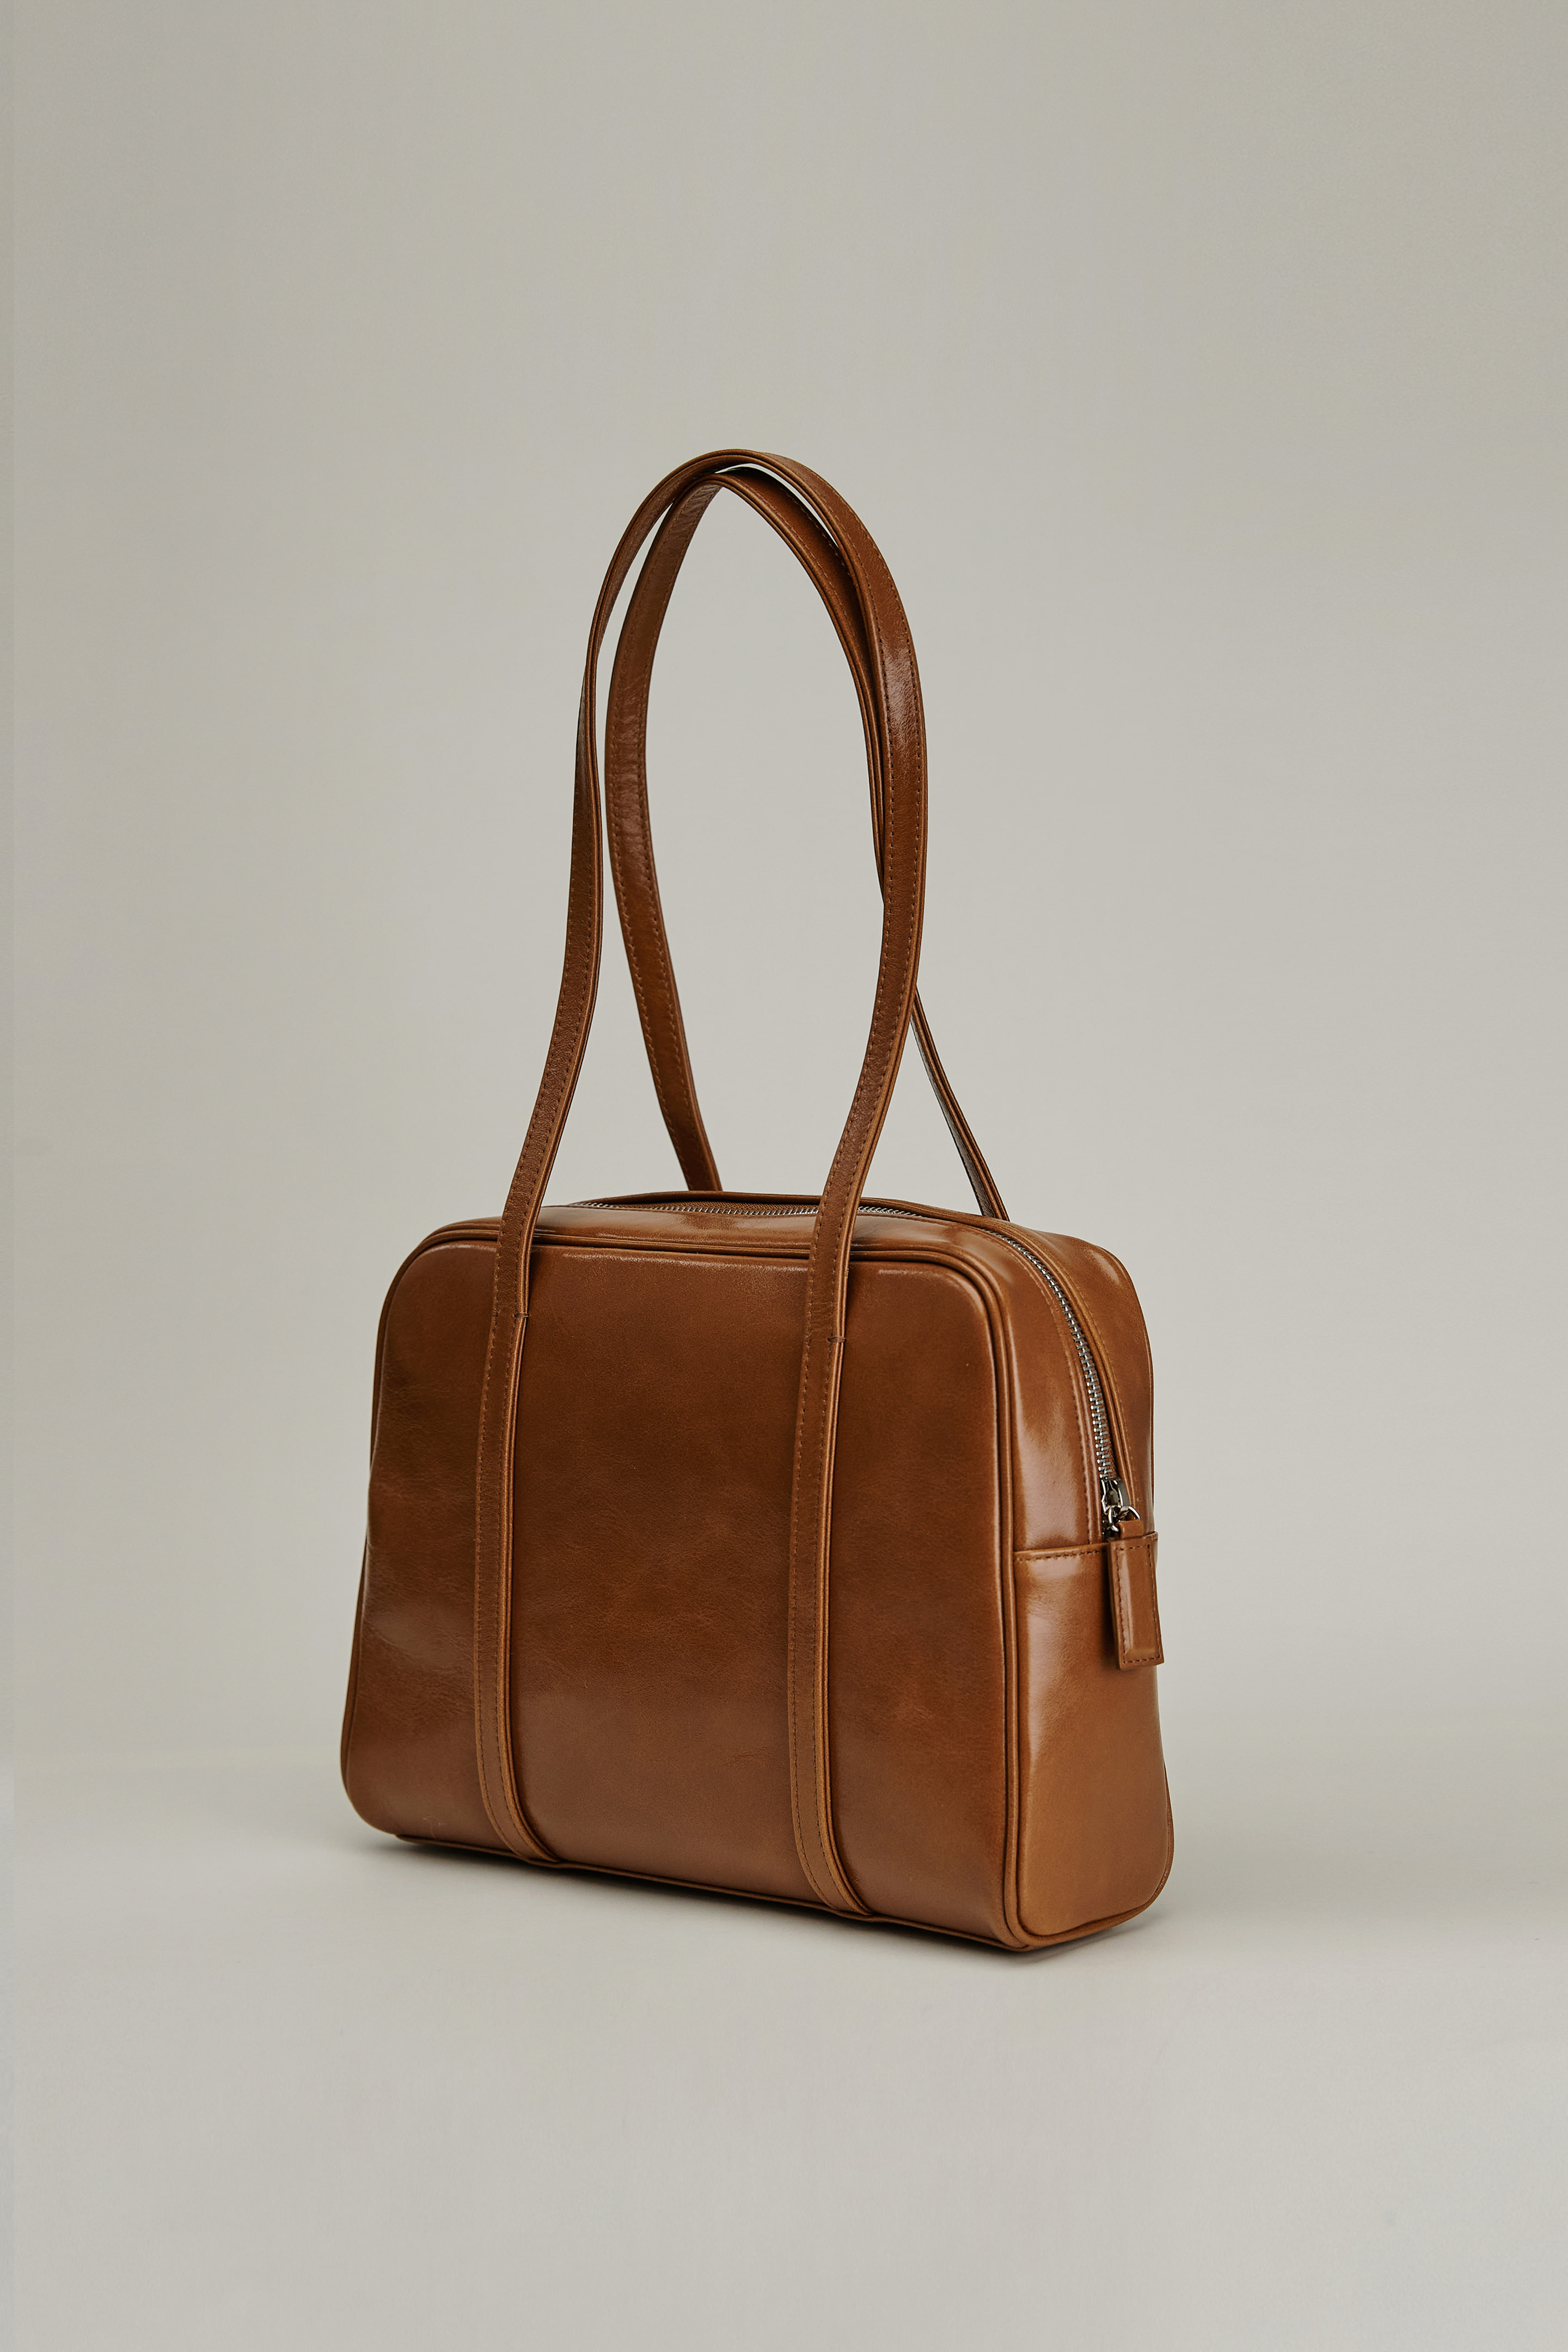 Boyy Bag Original with Shoulder Strap Camel